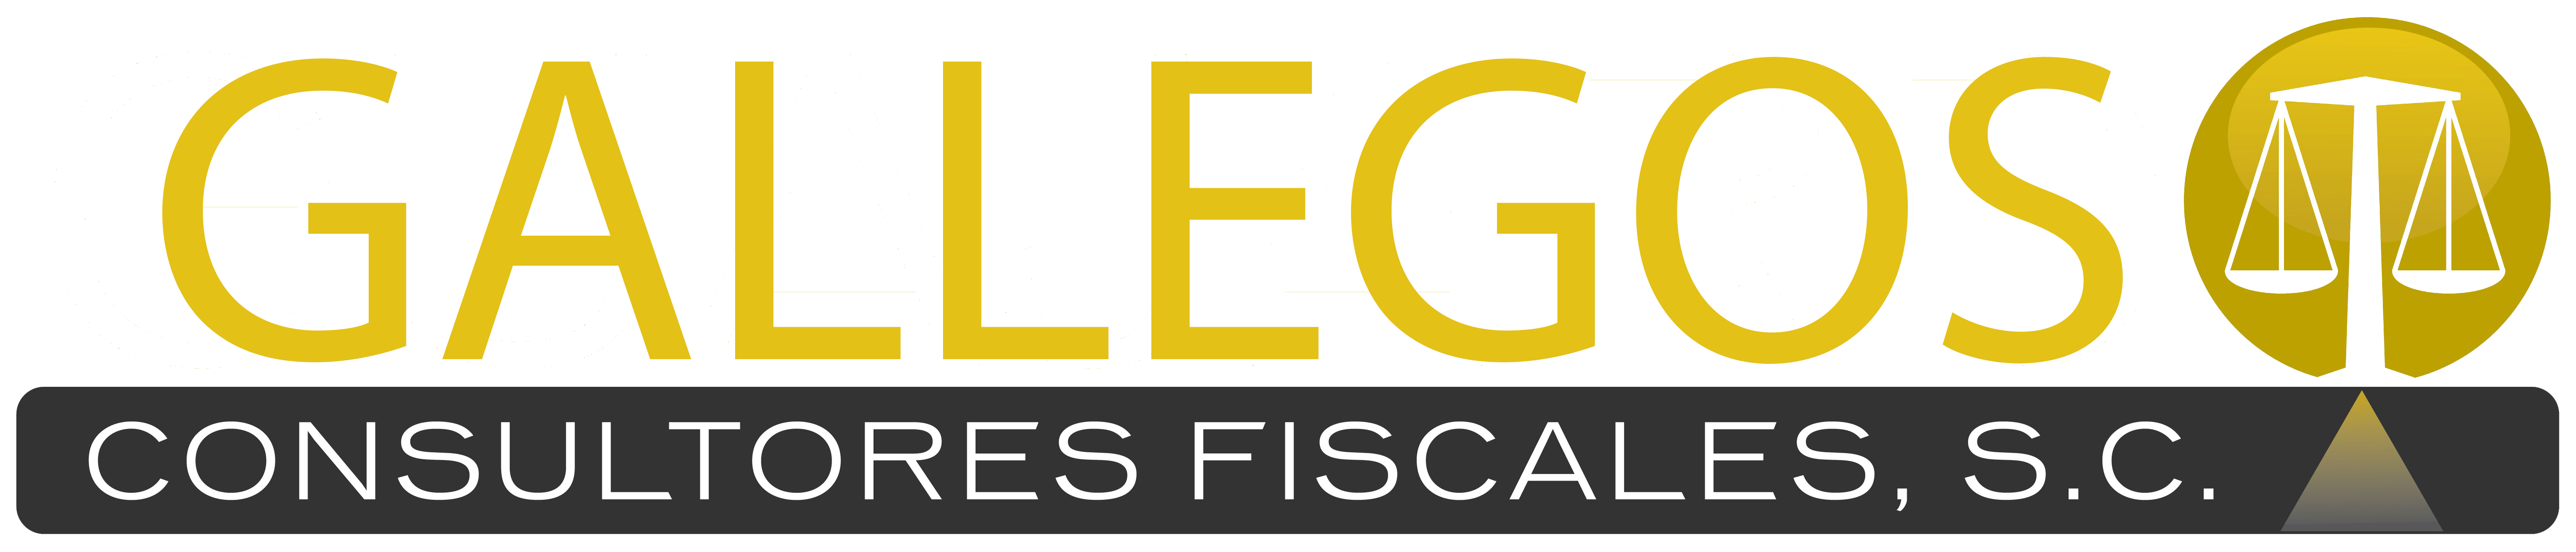 Gallegos Consultores Fiscales